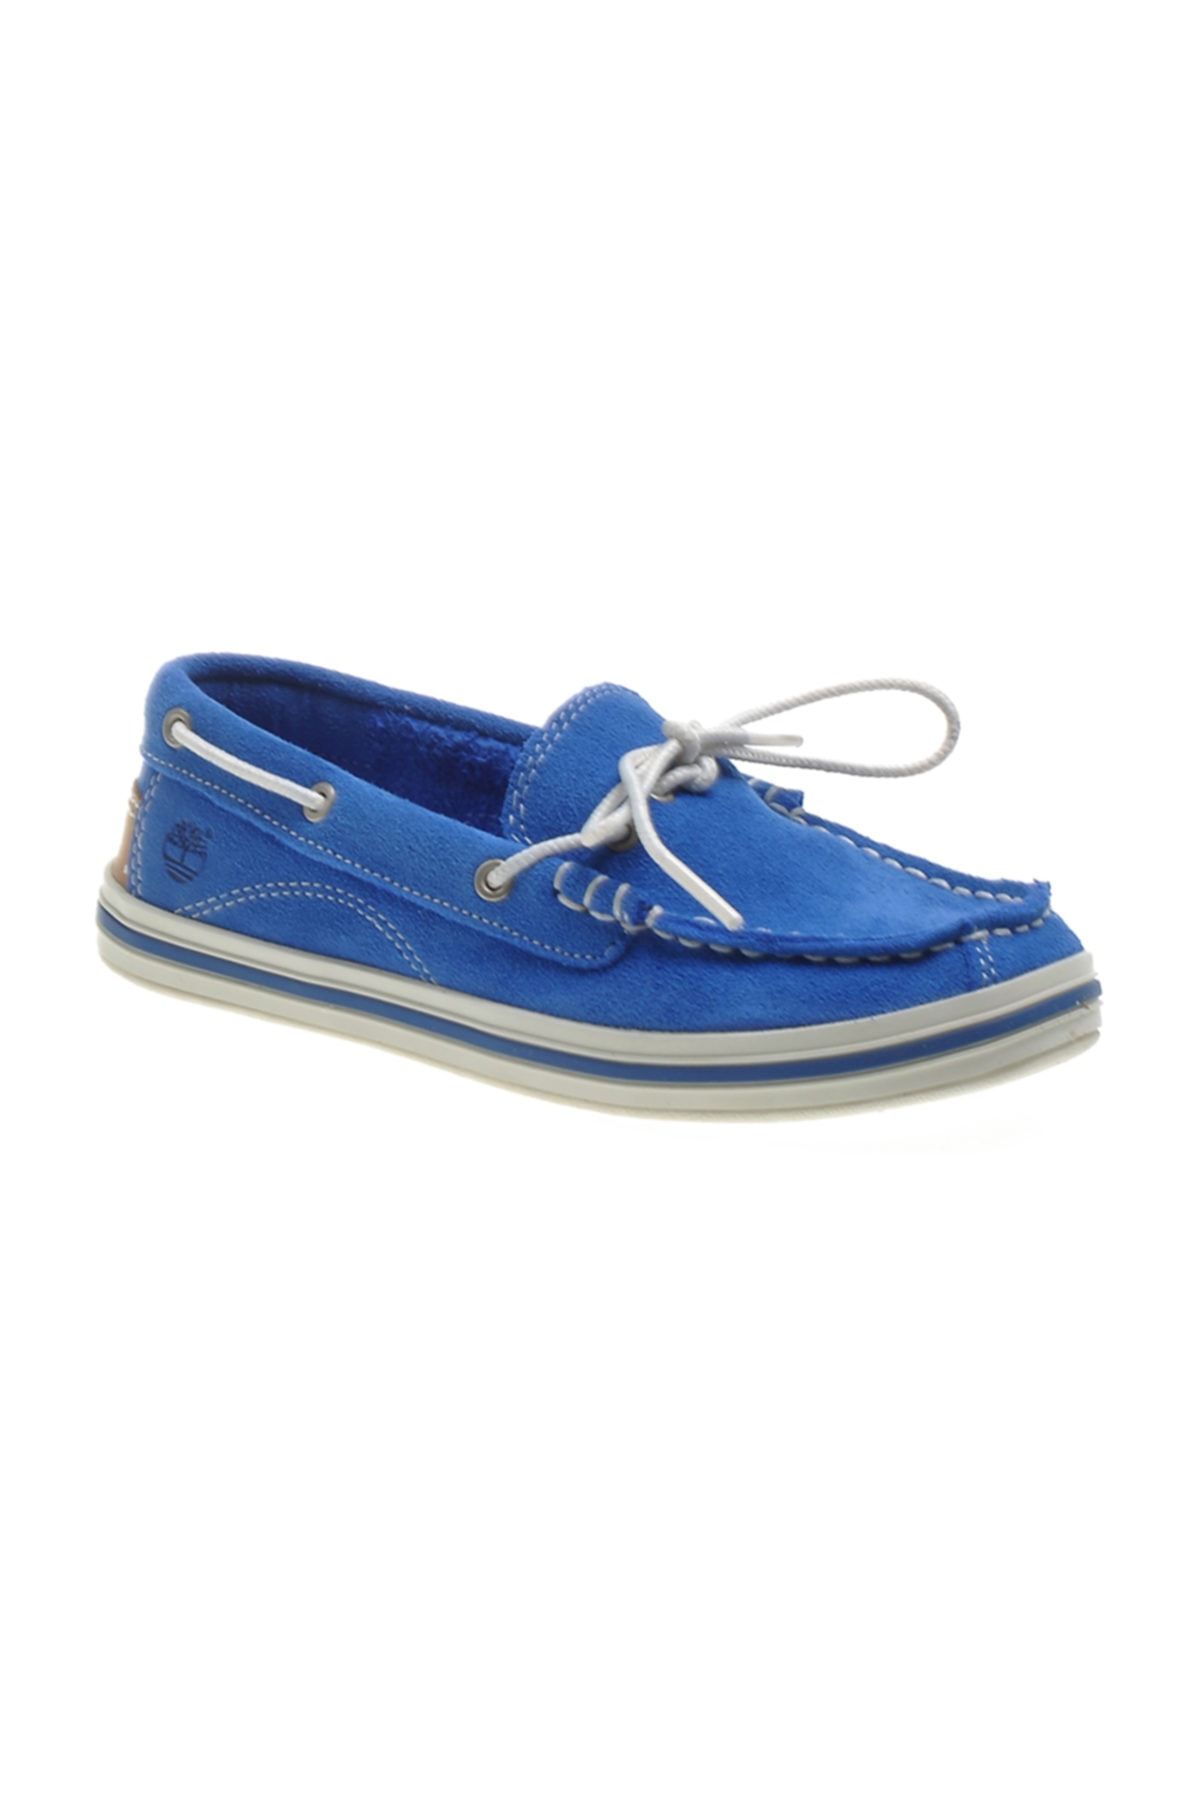 Timberland Erkek Çocuk Mavi Loafer Ayakkabı